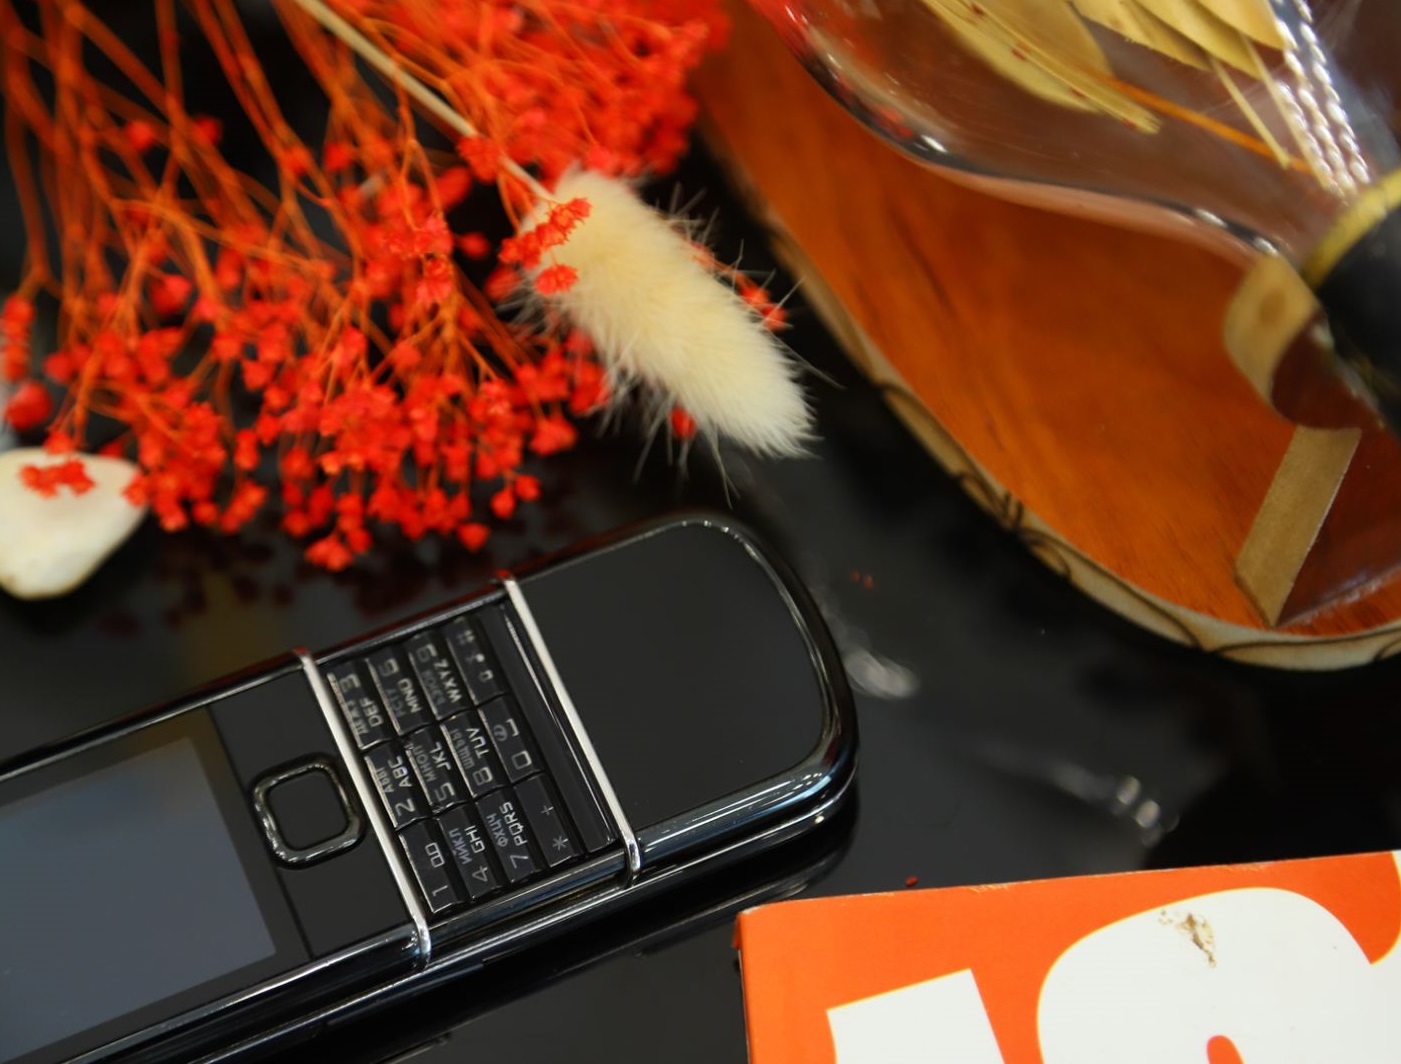 Điện Thoại Nokia 8910i Chính Hãng giá rẻ tại Hà Nội